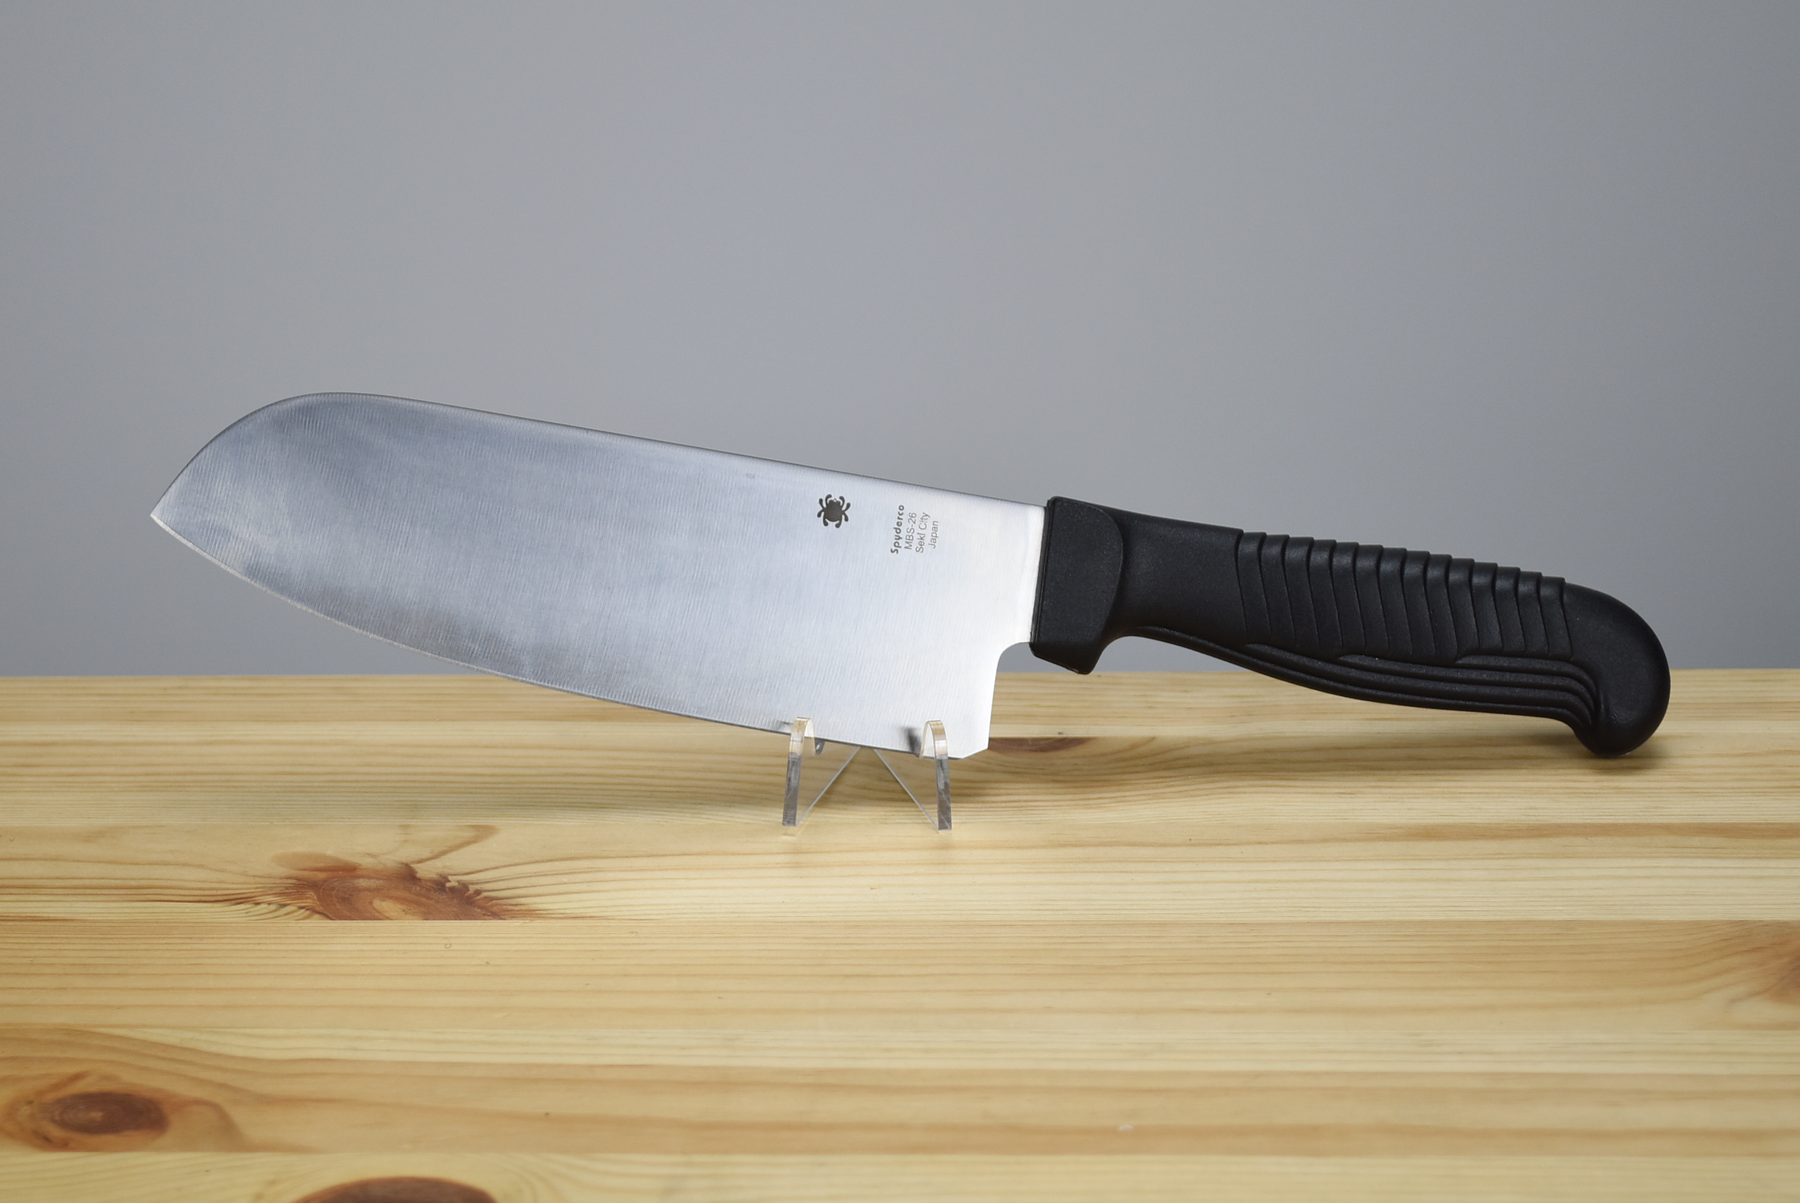 Spyderco K08PBK Santoku Kitchen Knife Black Polypropylene 6.81